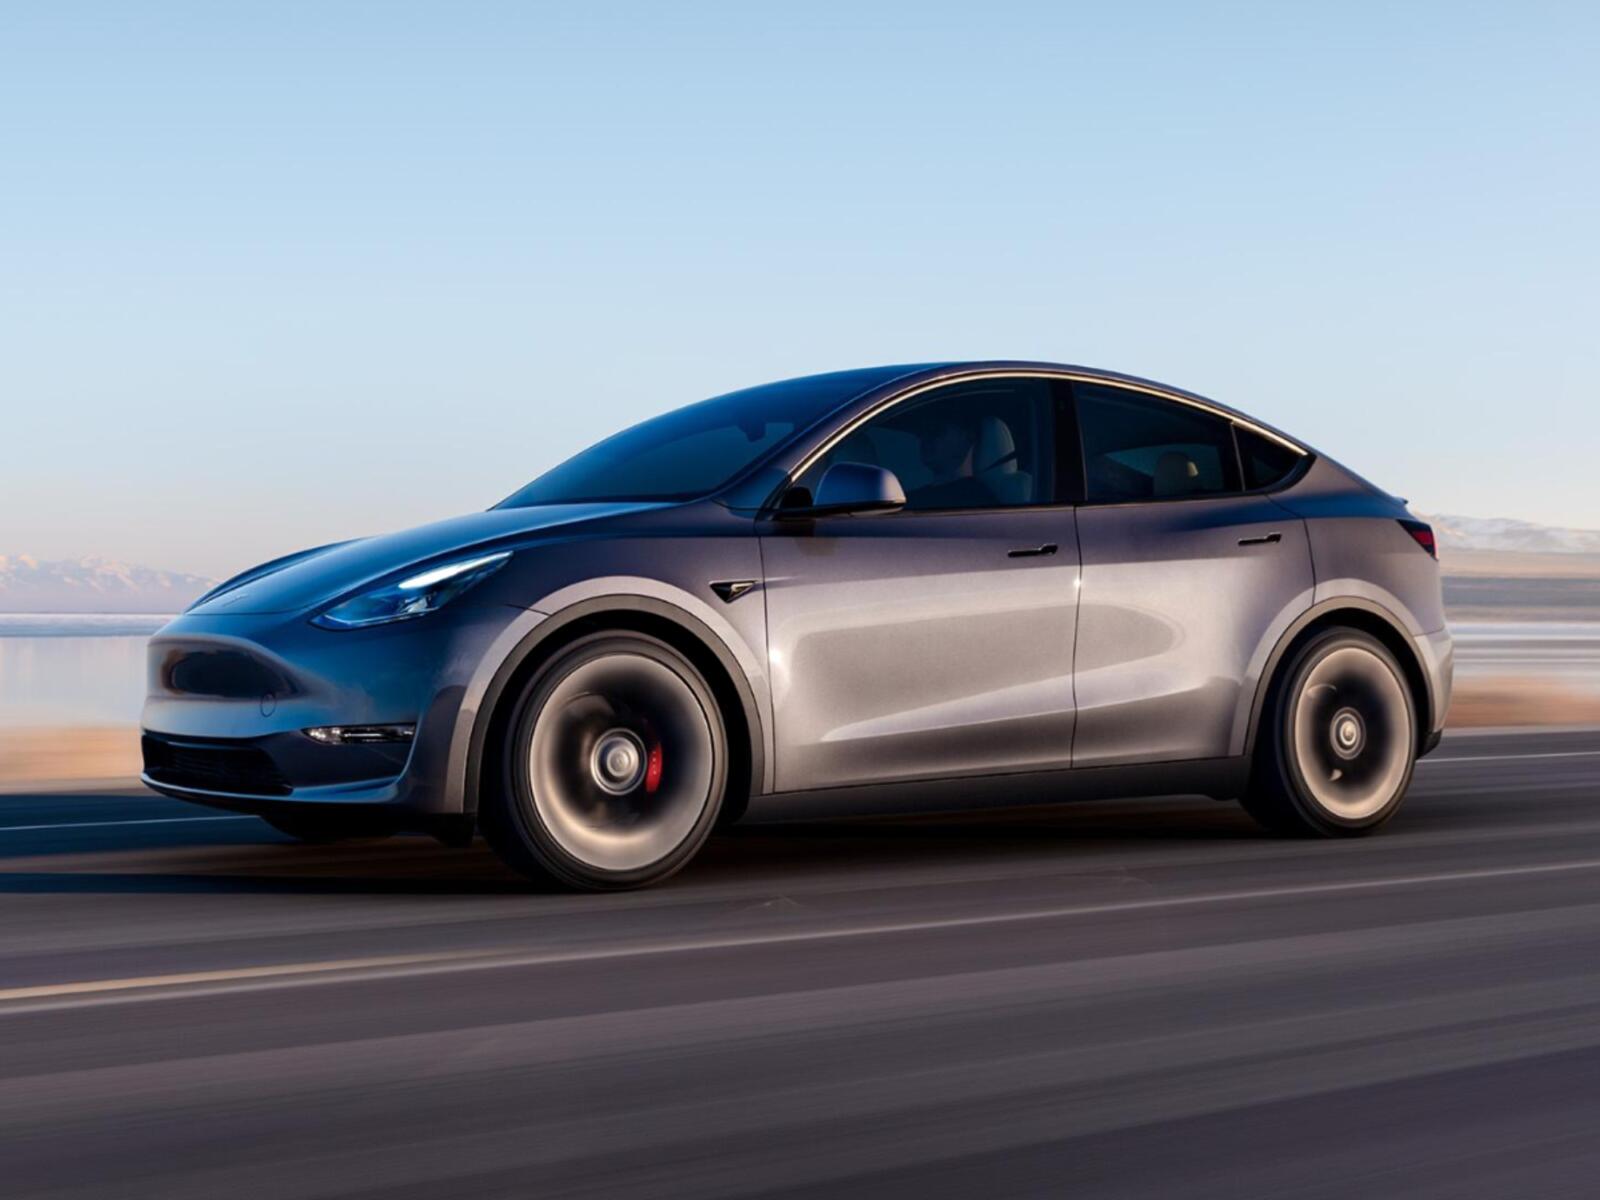 4 Stück Auto Einstiegsleisten Schutzfolie für Tesla Model Y 2020